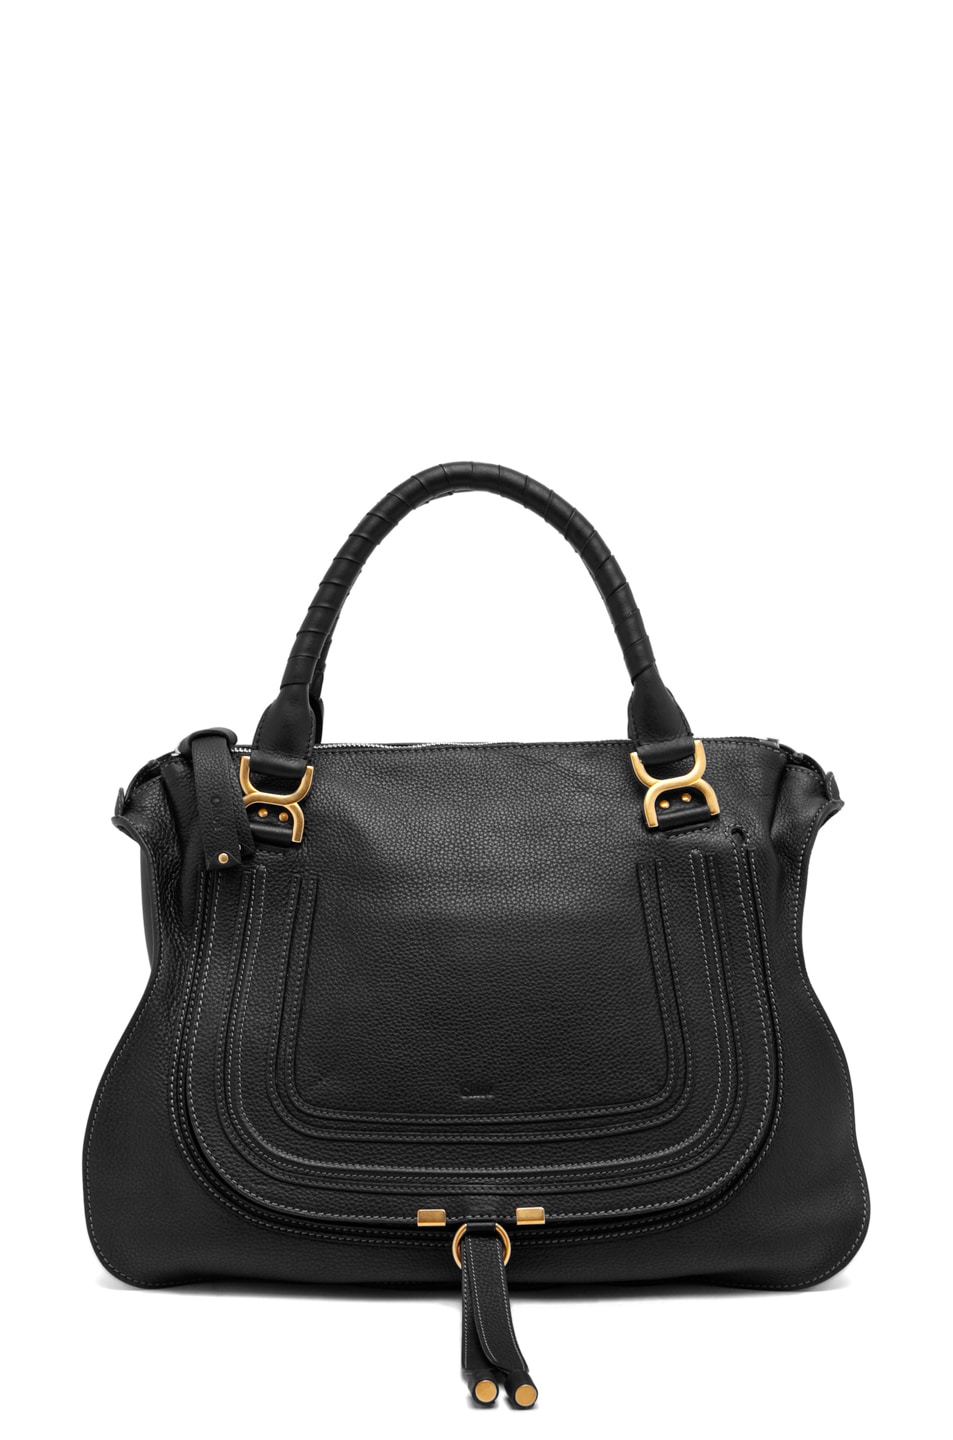 Chloe Large Marcie Shoulder Bag in Black | FWRD